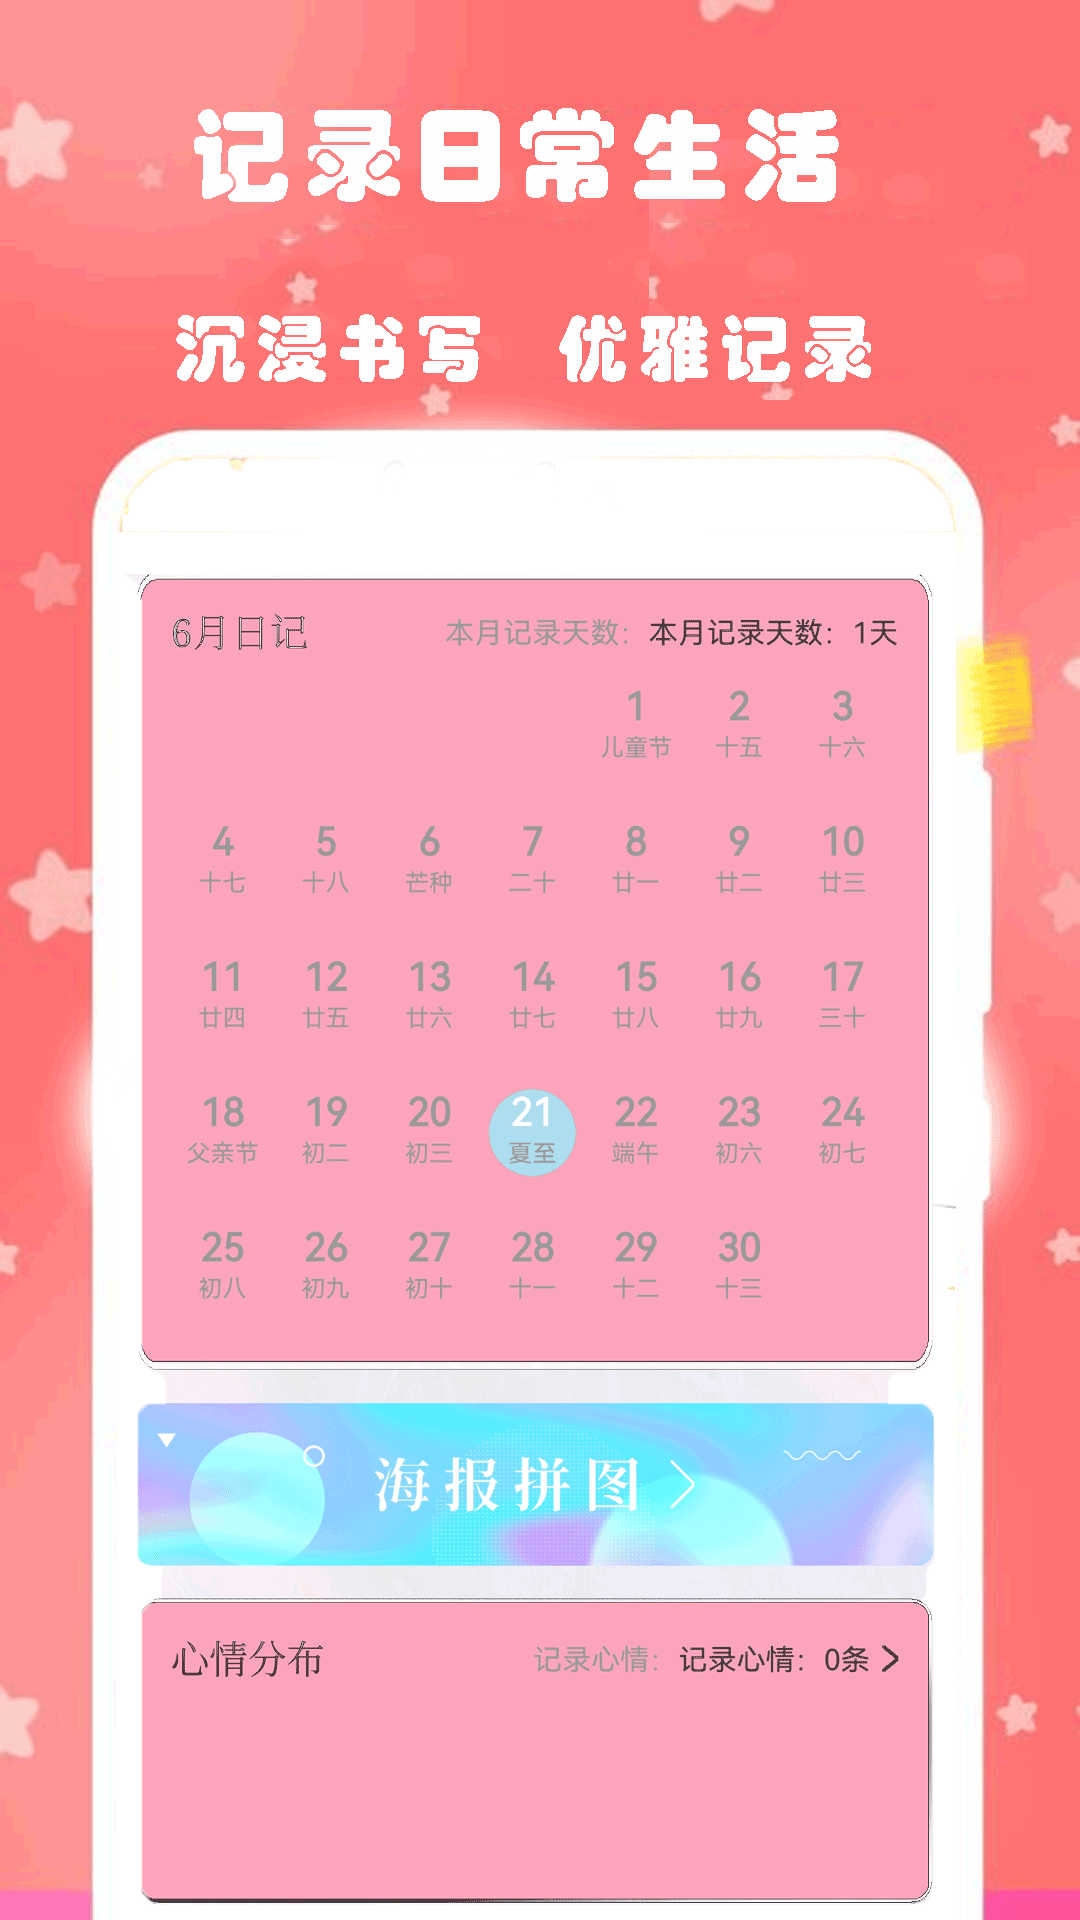 心动恋爱日常日记app下载